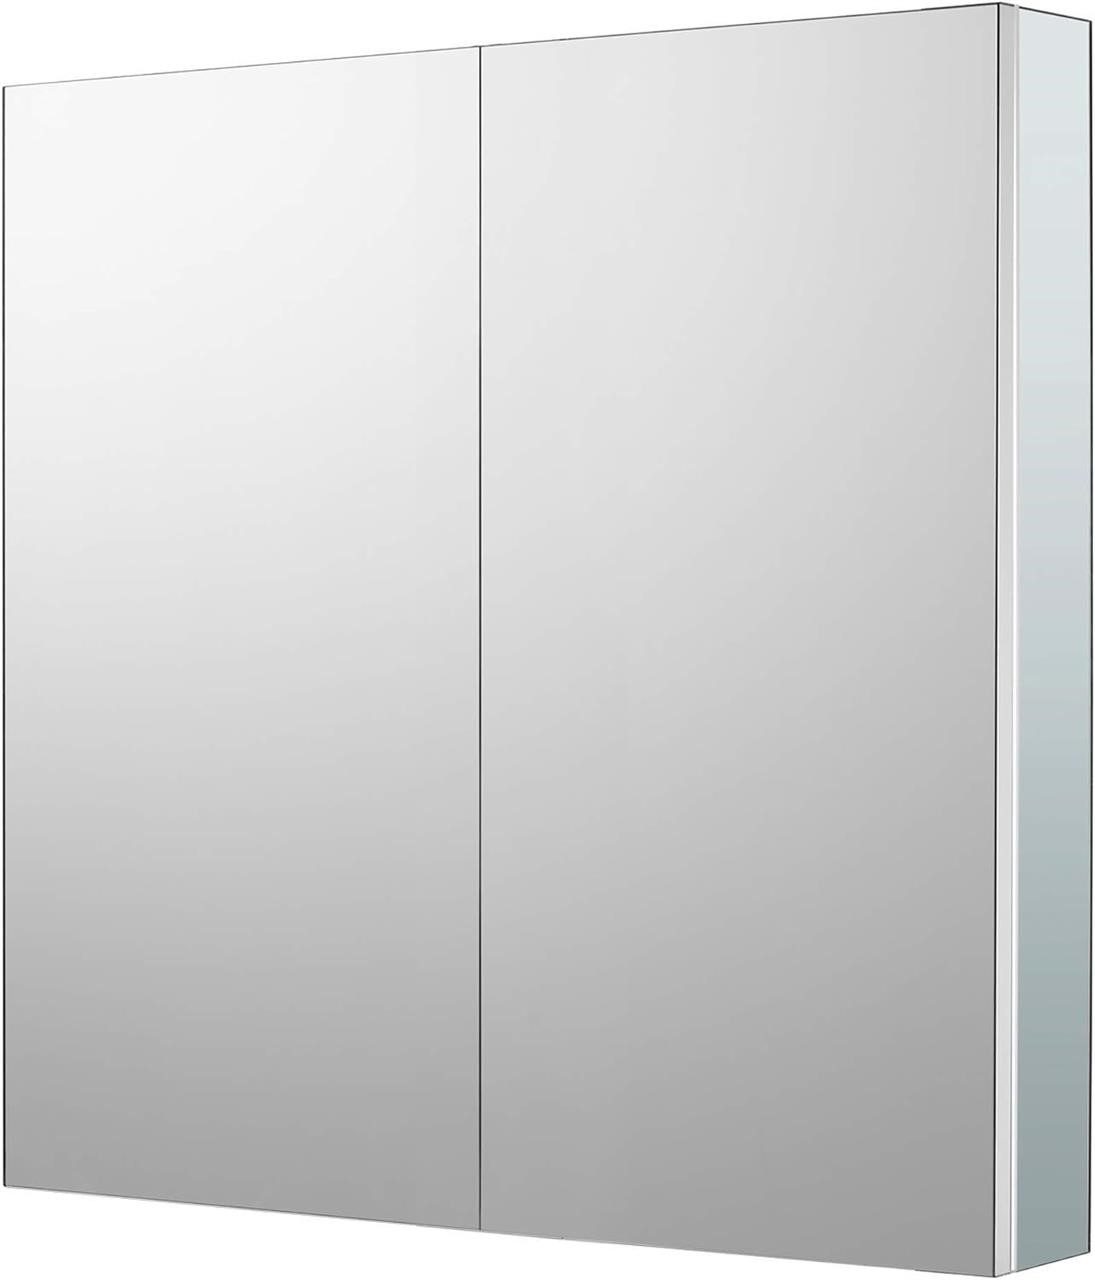 NEW $380 Aluminum Bathroom Medicine Cabinet